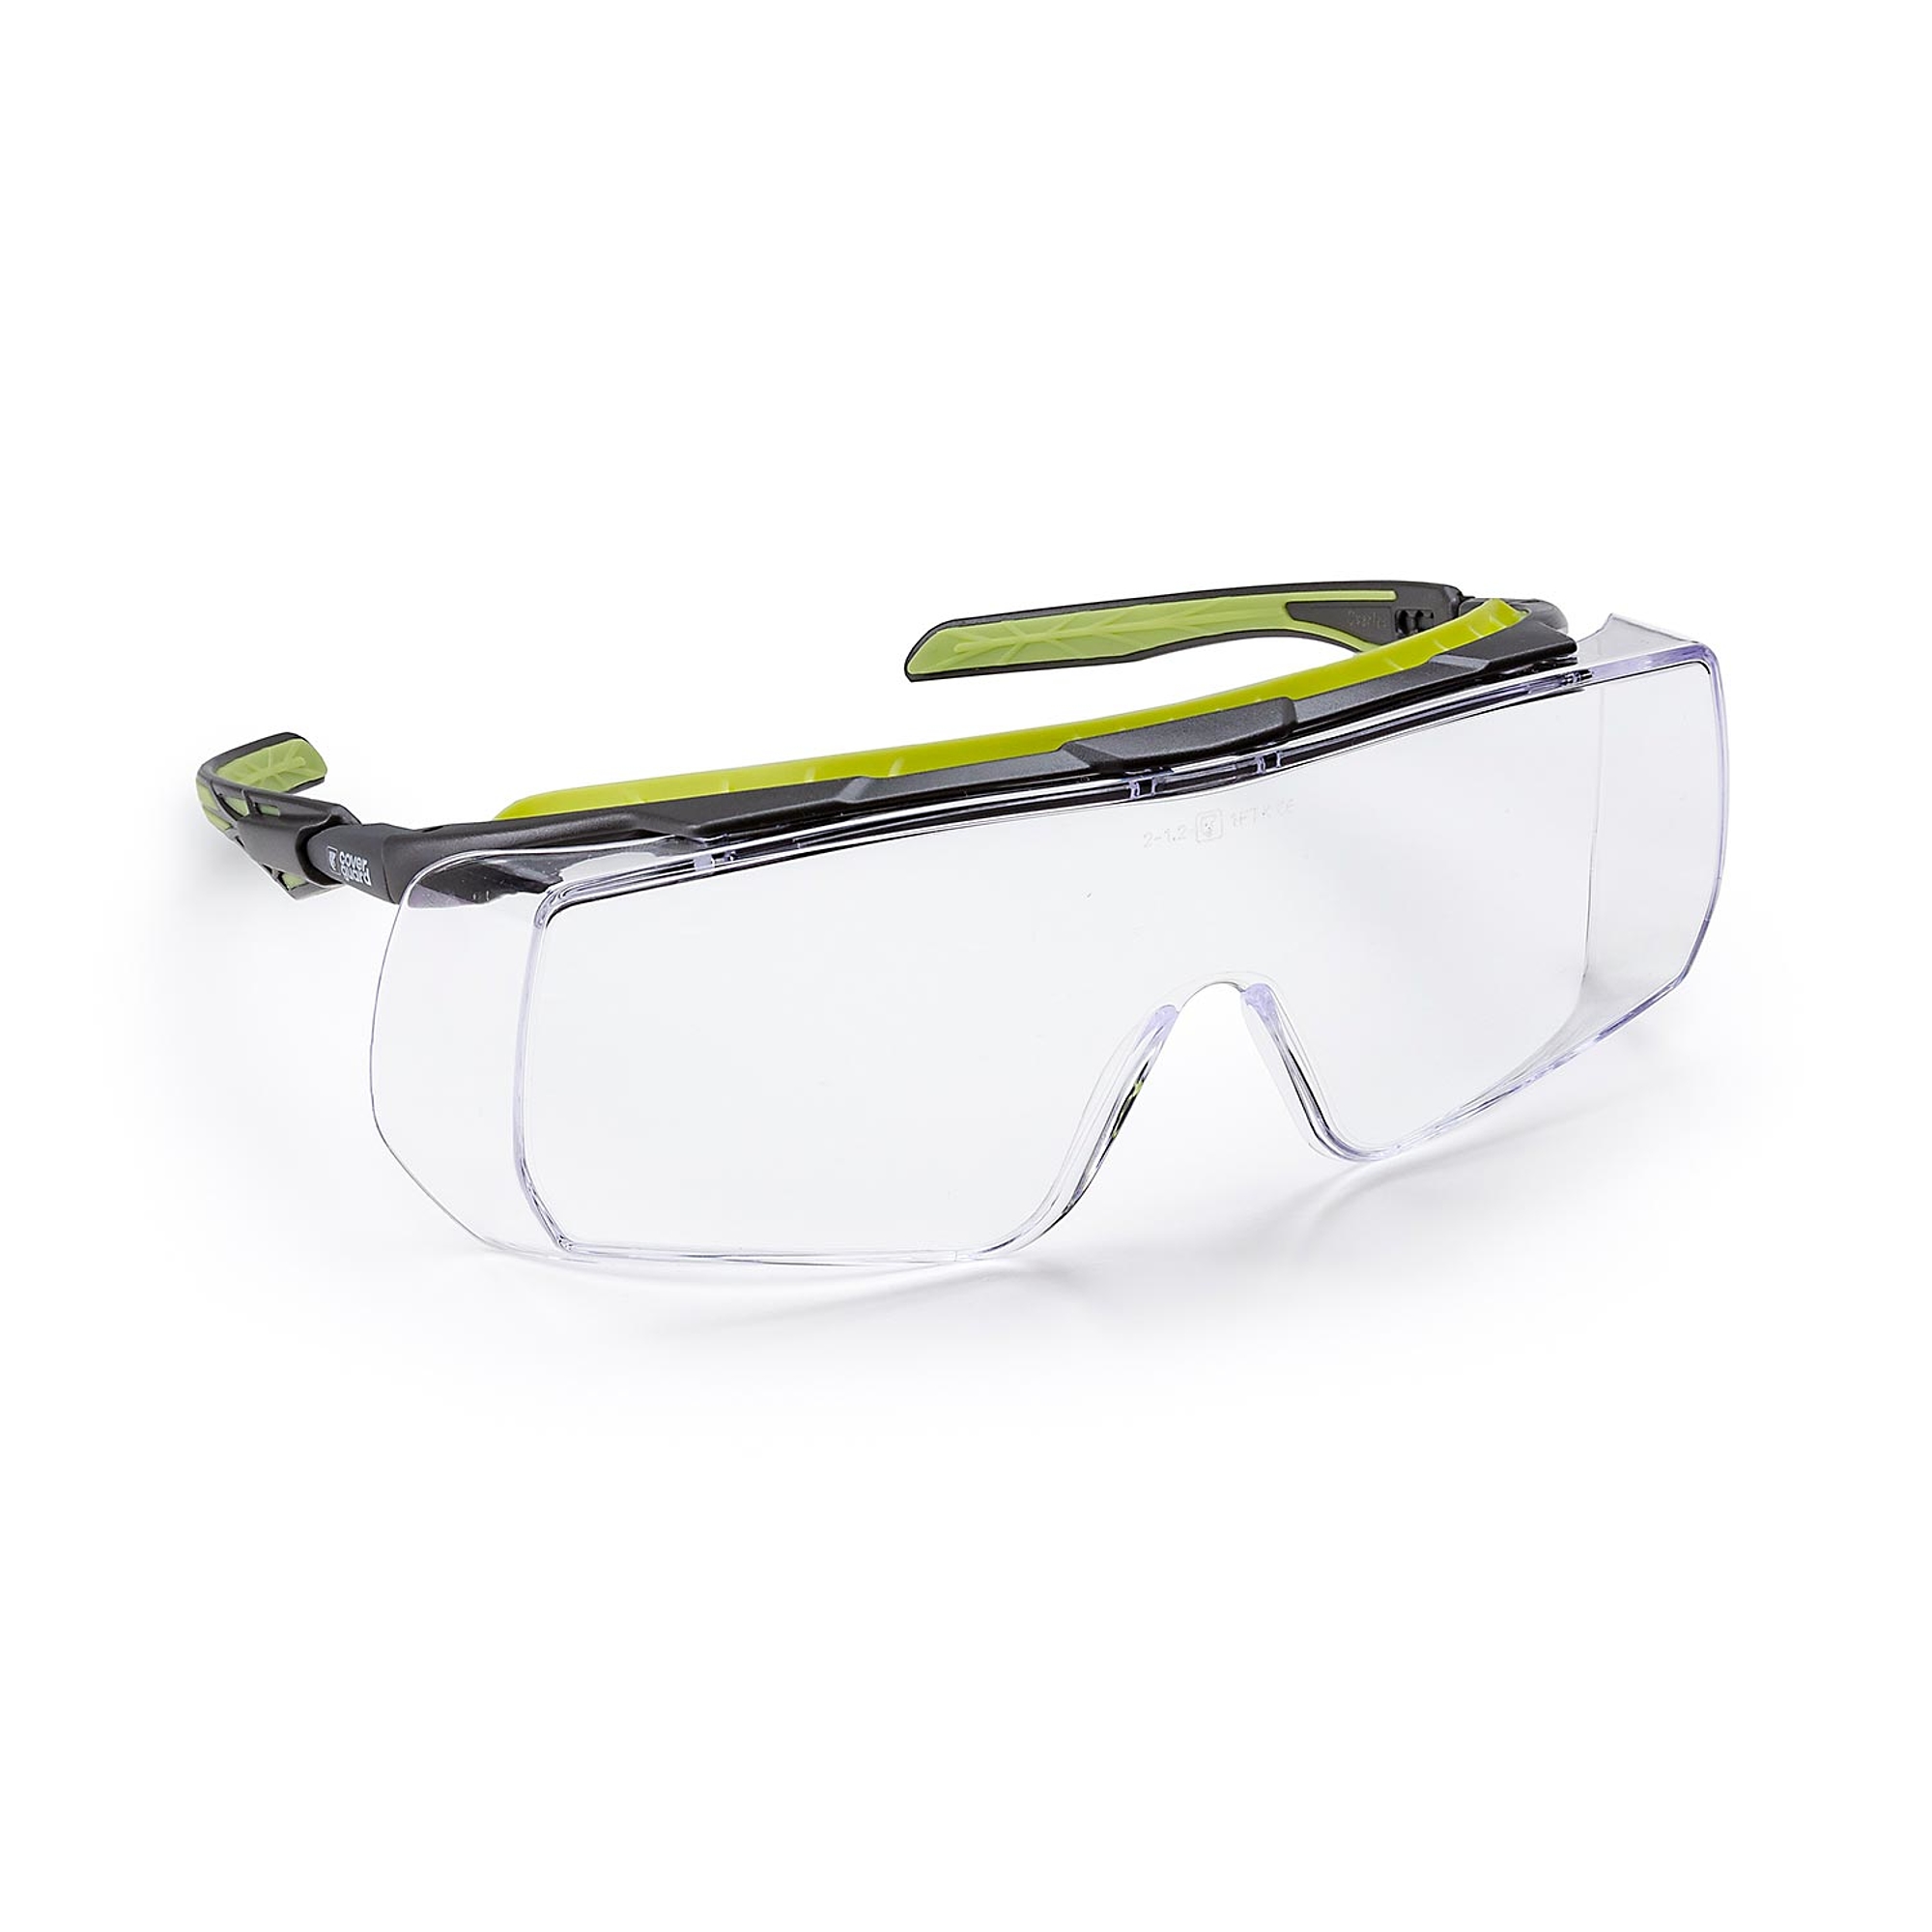 OVERLUX - szemüveg felett viselhető védőszemüveg